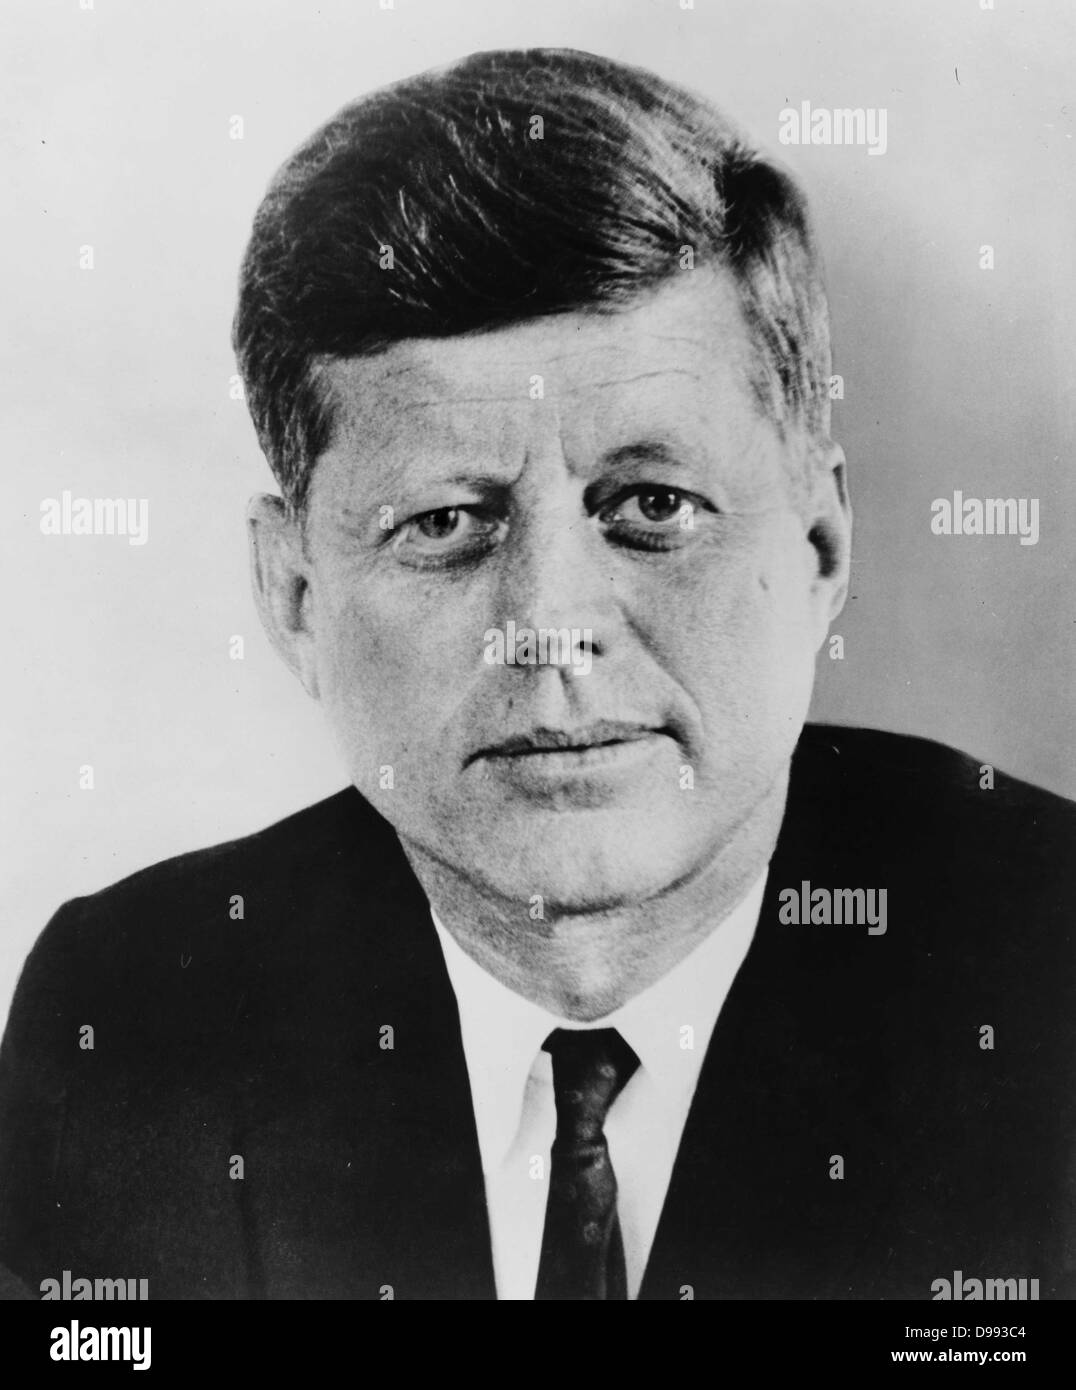 John Fitzgerald Kennedy (29 maggio 1917 - 22 novembre 1963), trentacinquesimo presidente degli Stati Uniti, che serve da 1961 fino al suo assassinio nel 1963. Foto Stock